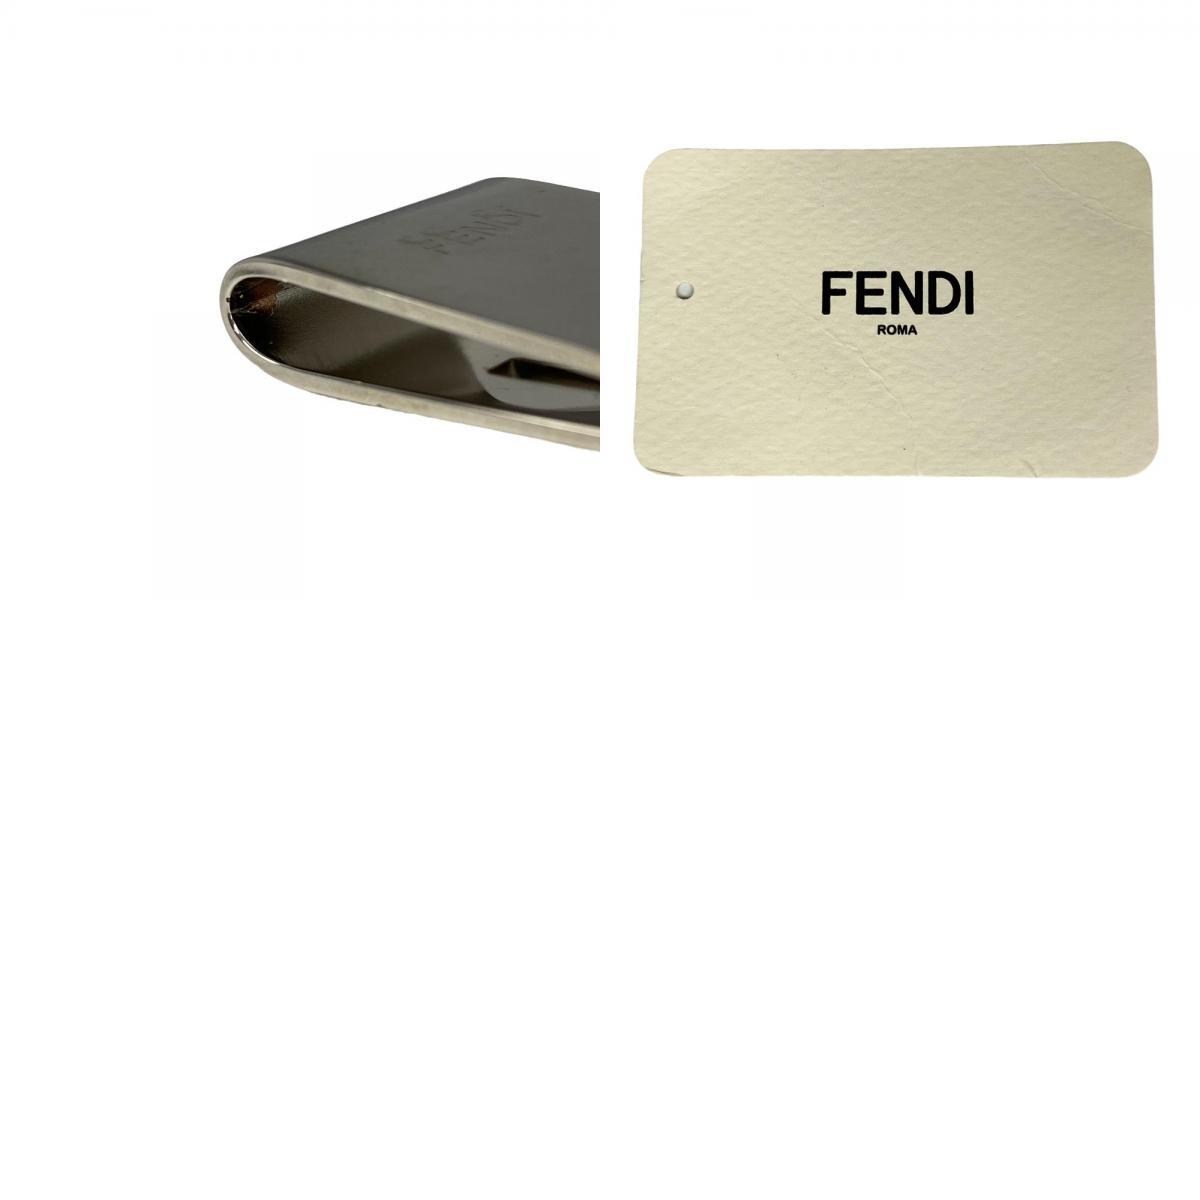 FENDI フェンディ FFロゴ メタル マネークリップ シルバー メンズ ブランド_画像10